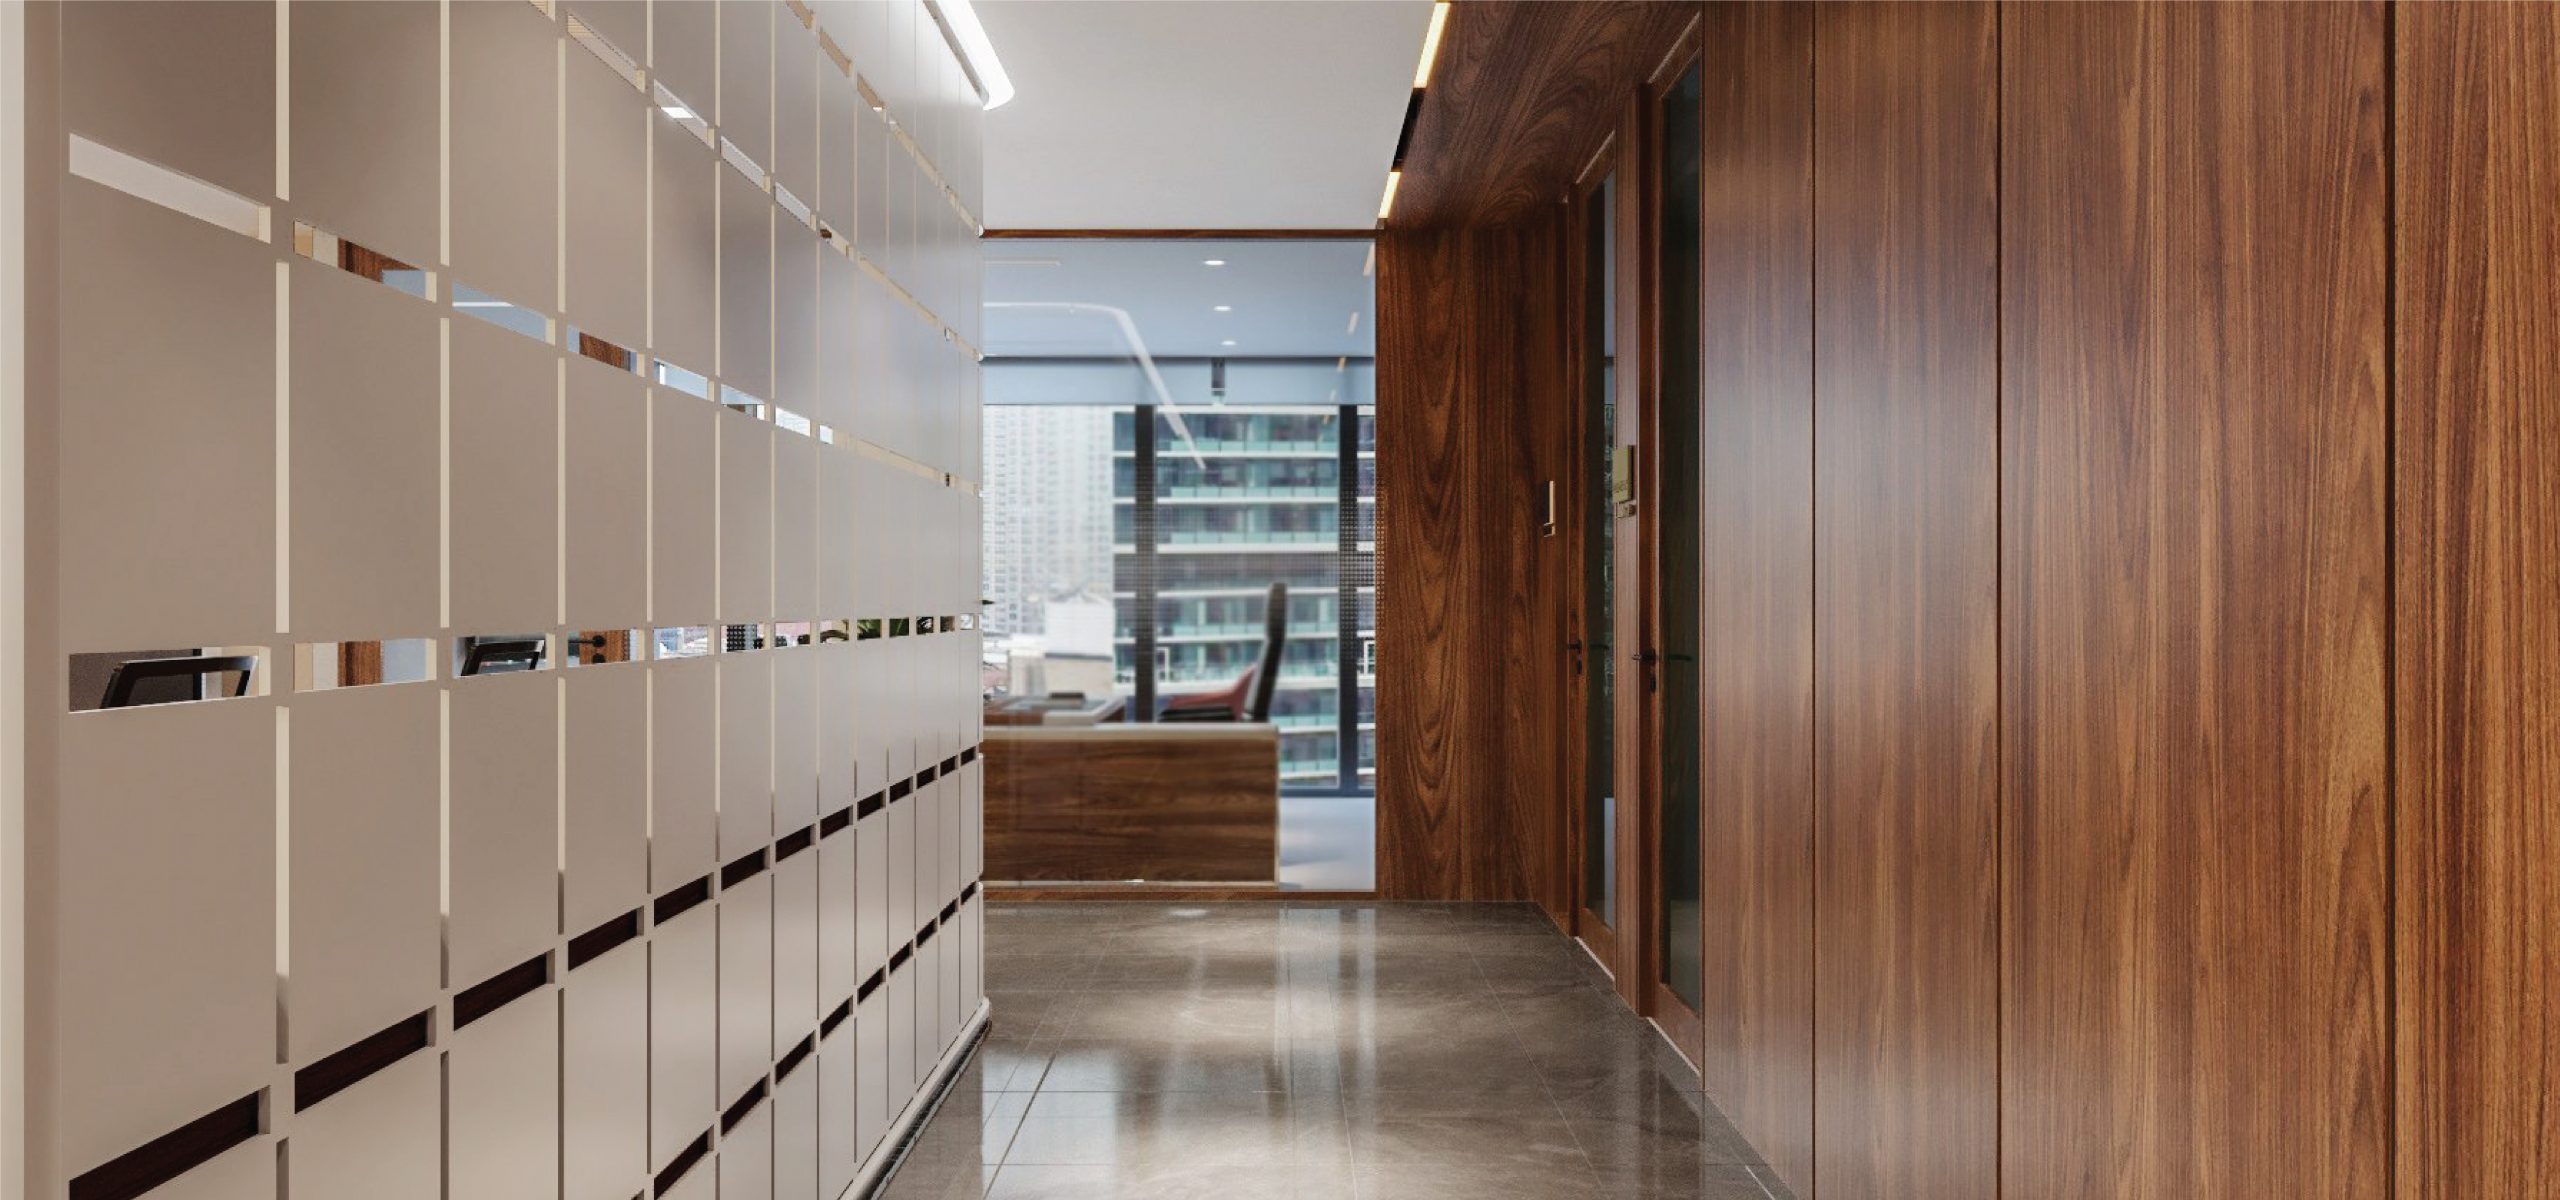 Với thiết kế nội thất văn phòng cao cấp tại Hà Nội, không chỉ giúp tạo ra một không gian làm việc chuyên nghiệp mà còn làm tăng hiệu suất công việc của nhân viên. Với vật liệu và ý tưởng thiết kế mới, bạn sẽ có một không gian hoàn hảo cho công việc của mình.